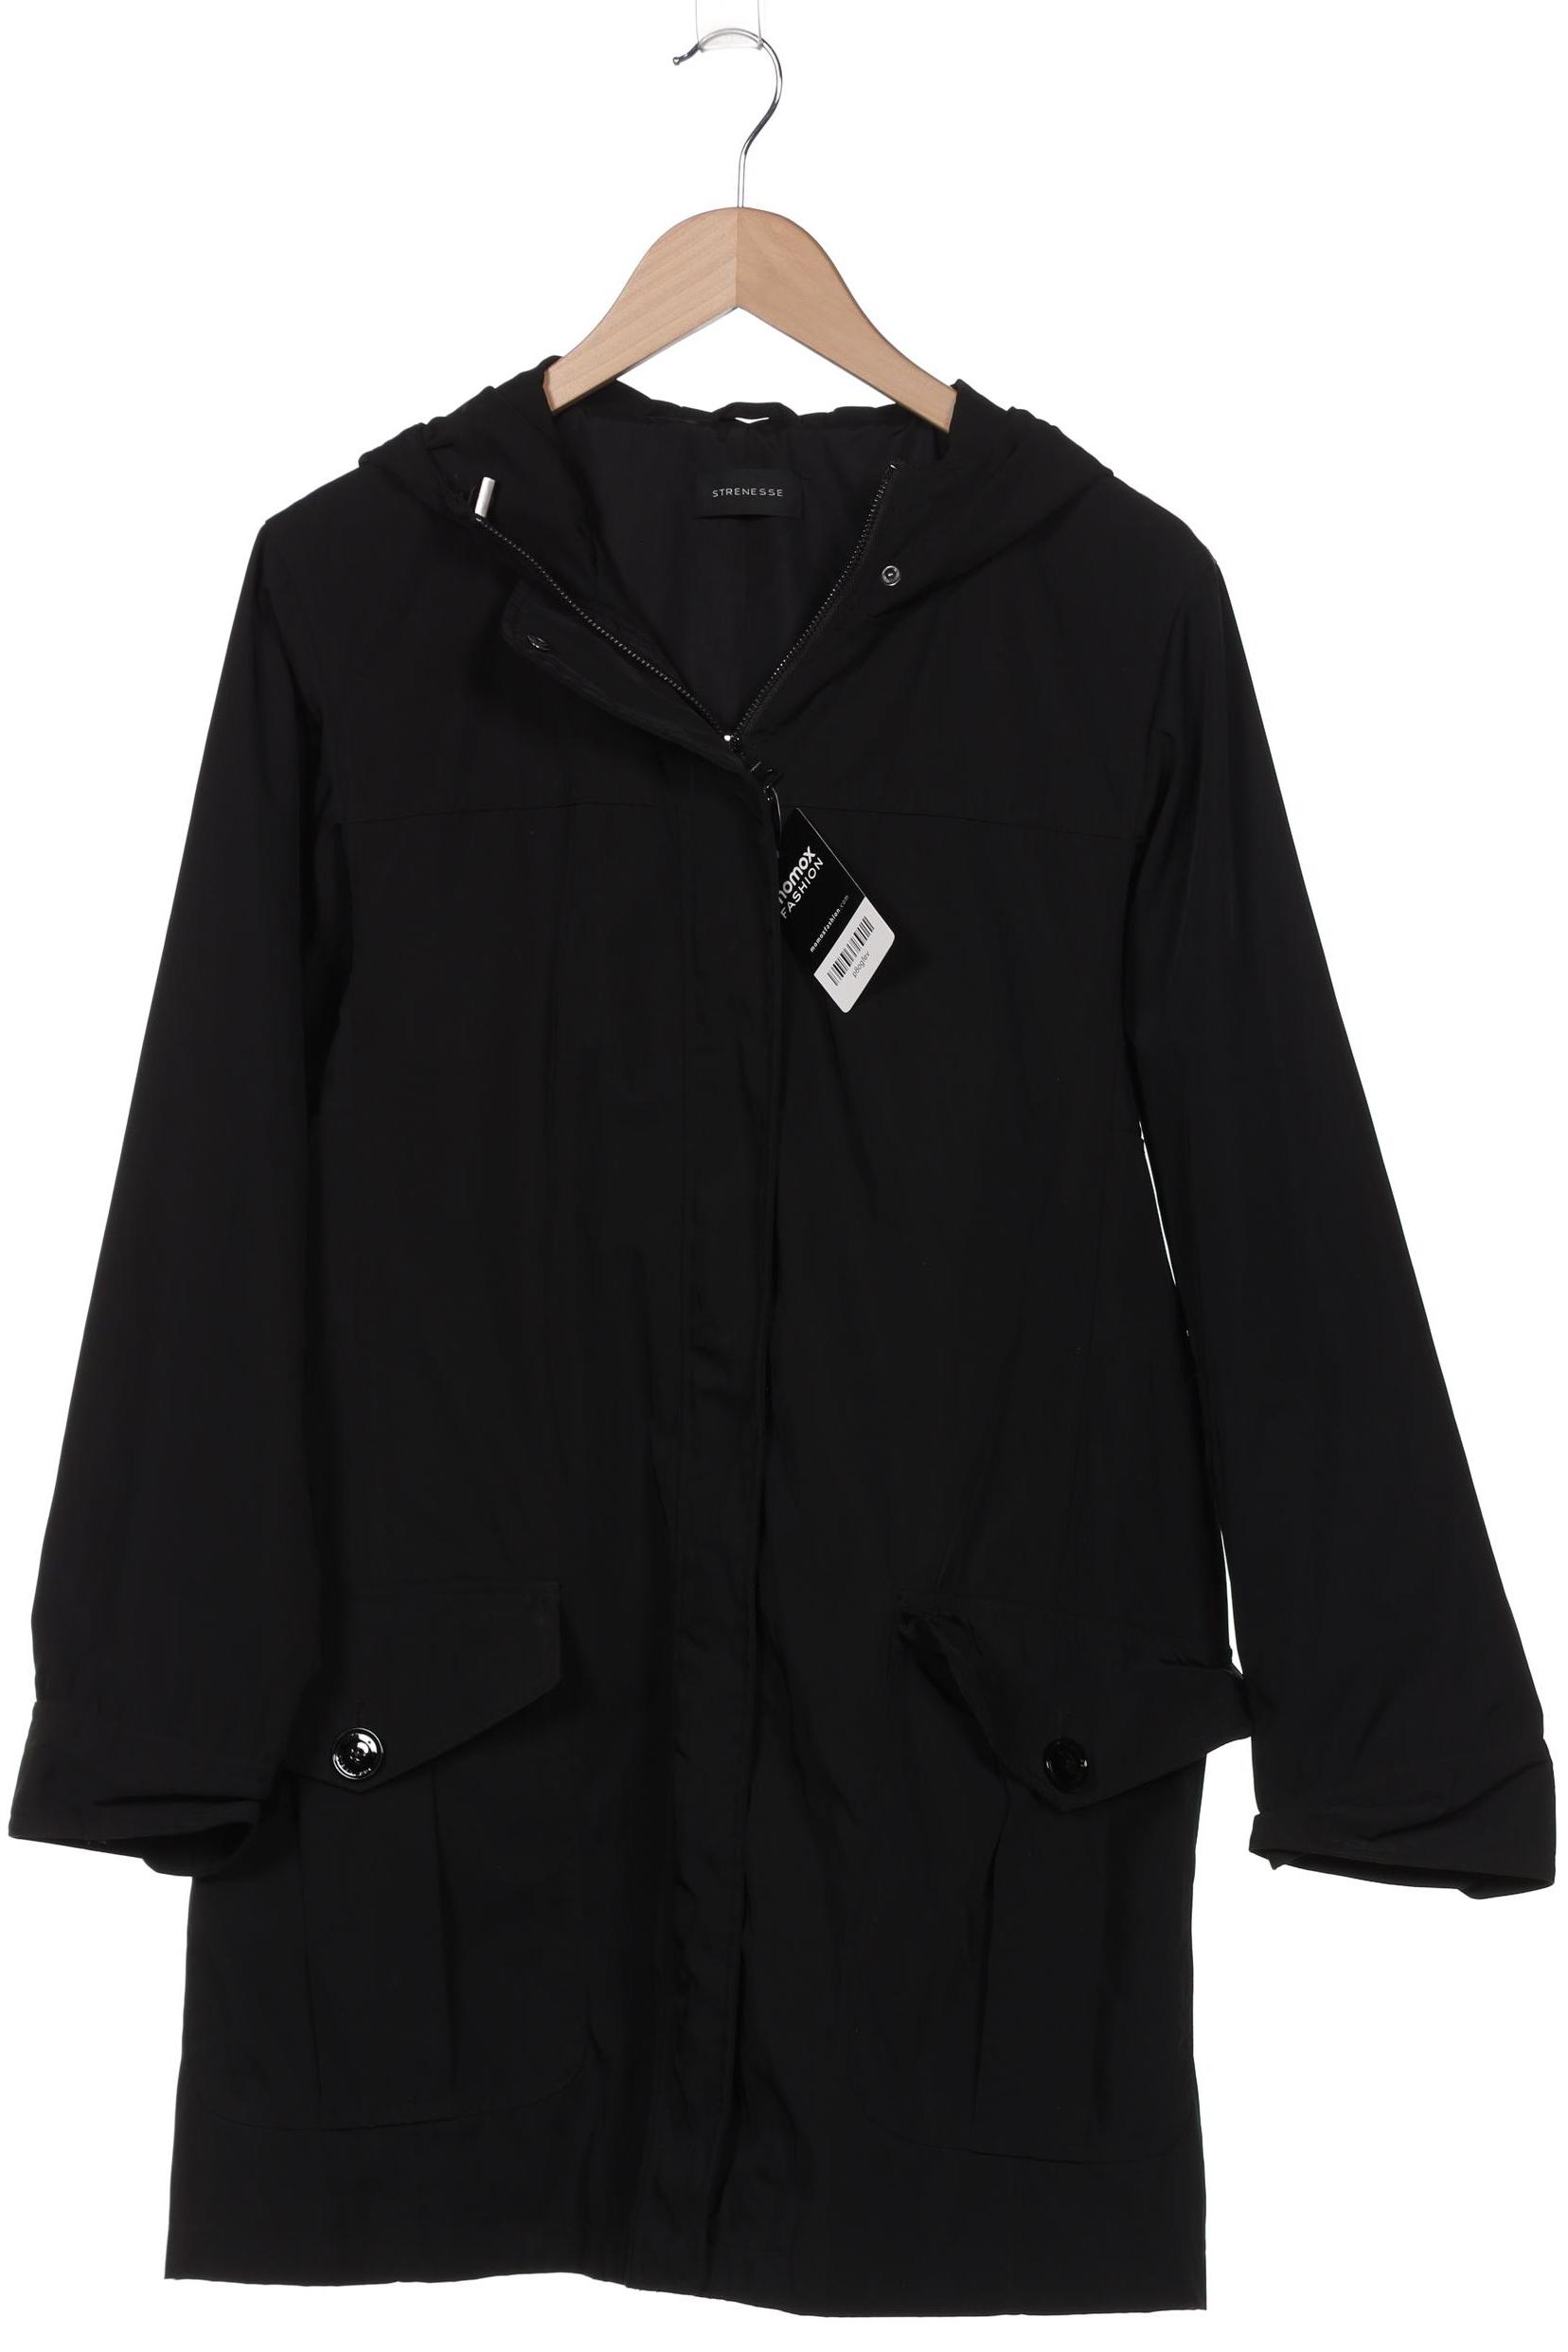 Strenesse Damen Mantel, schwarz, Gr. 42 von Strenesse